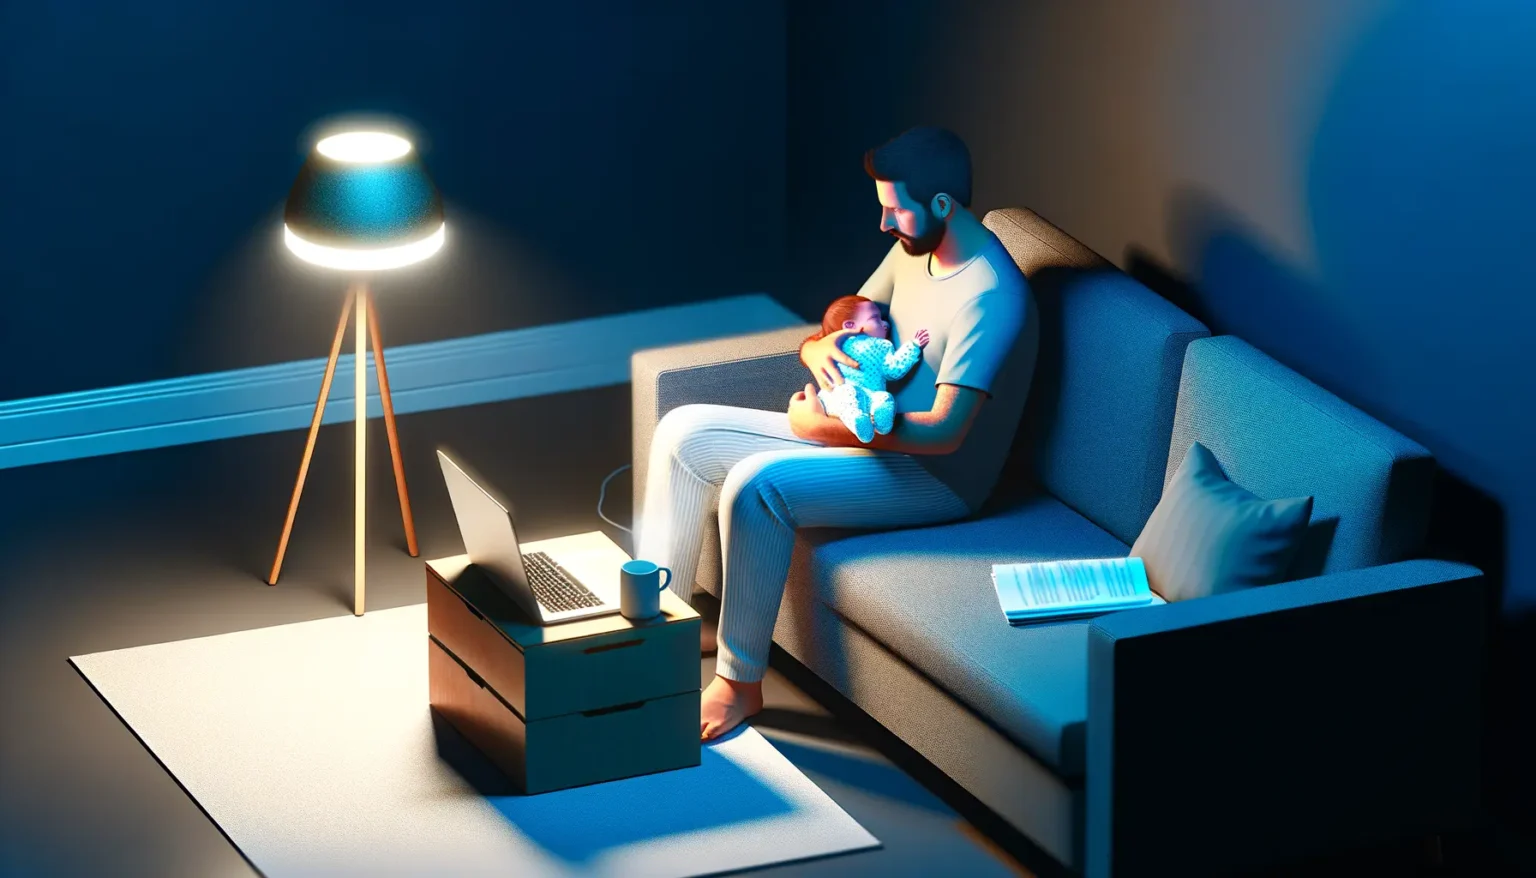 Eine illustrierte Szene zeigt einen Mann mit Bart, der liebevoll ein Baby im Arm hält, während er auf einem Sofa in einem dunklen Raum sitzt. Neben ihm steht ein kleiner Beistelltisch mit einer Tasse und einem Laptop, der geöffnet ist. Auf dem Boden liegt ein Teppich. Hinter dem Sofa beleuchtet eine Stehlampe mit drei Holzbeinen den Raum, und auf dem Sofa liegt ein Buch. Die Szene strahlt eine warme, gemütliche Atmosphäre aus.